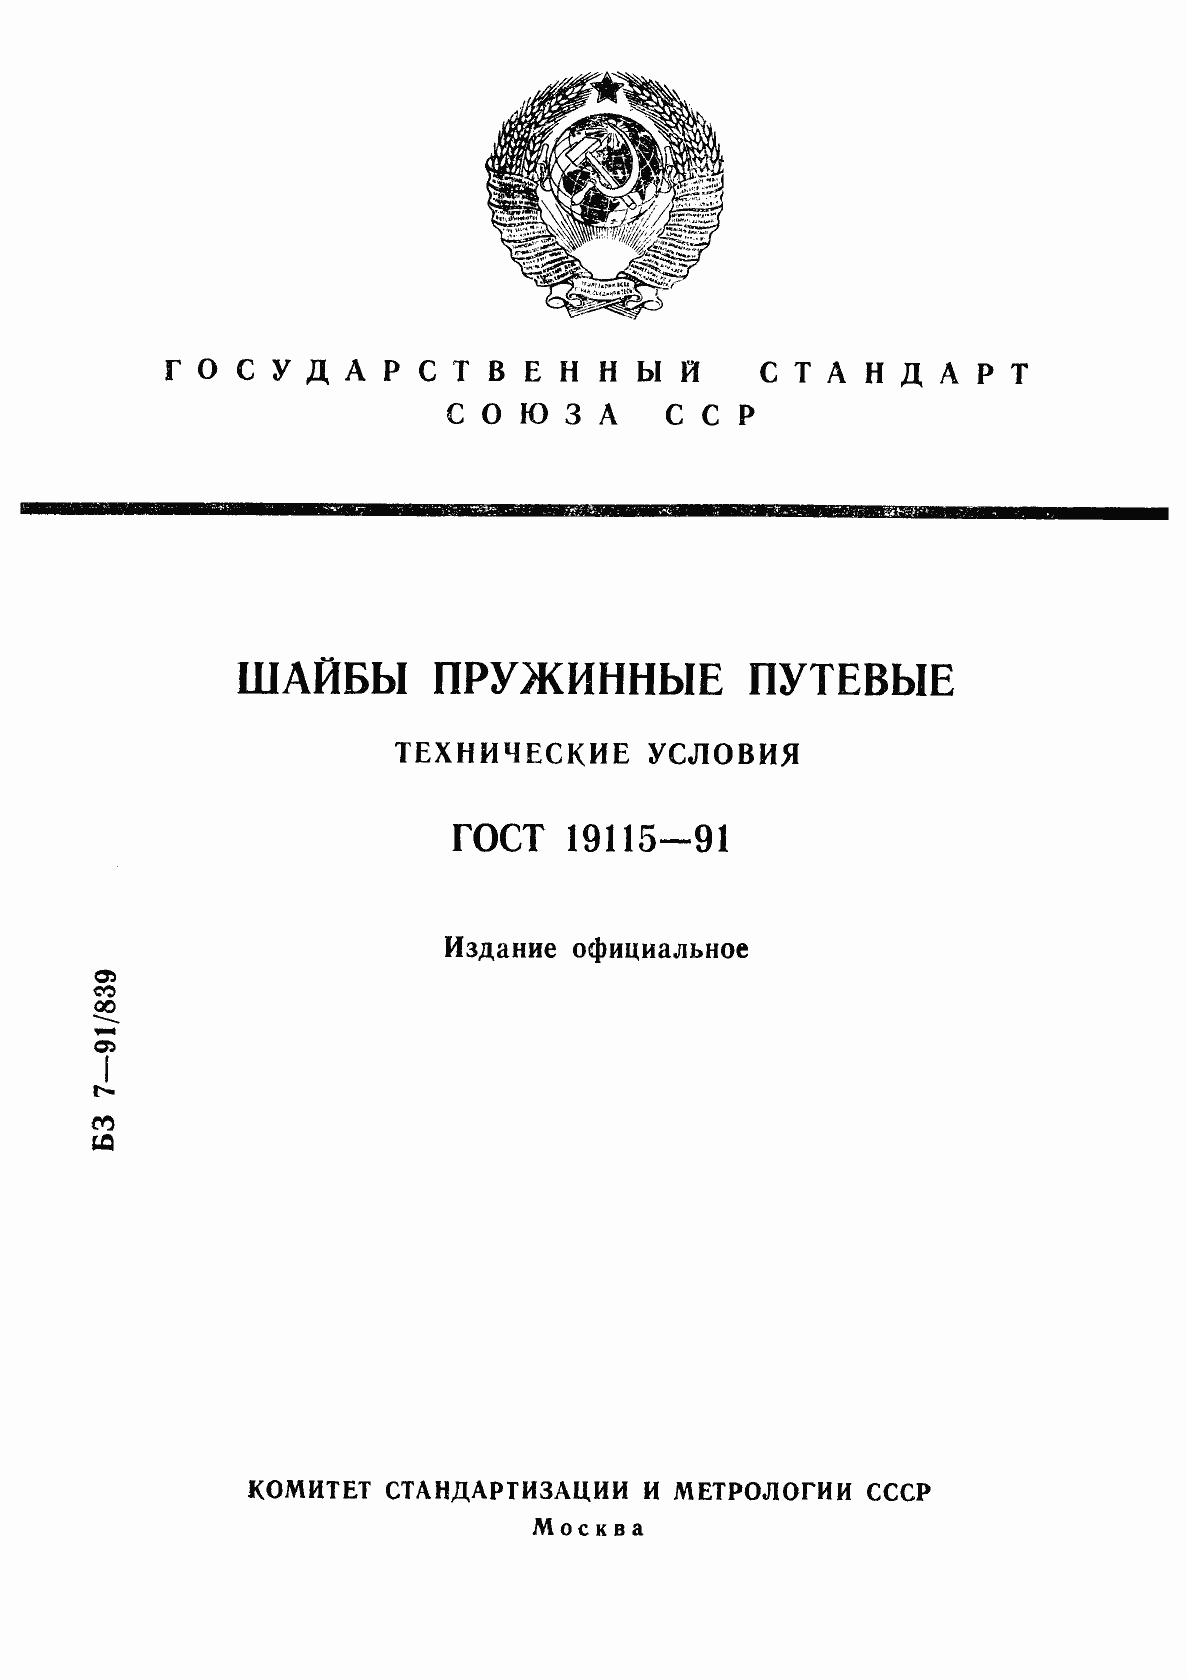  19115-91.  1